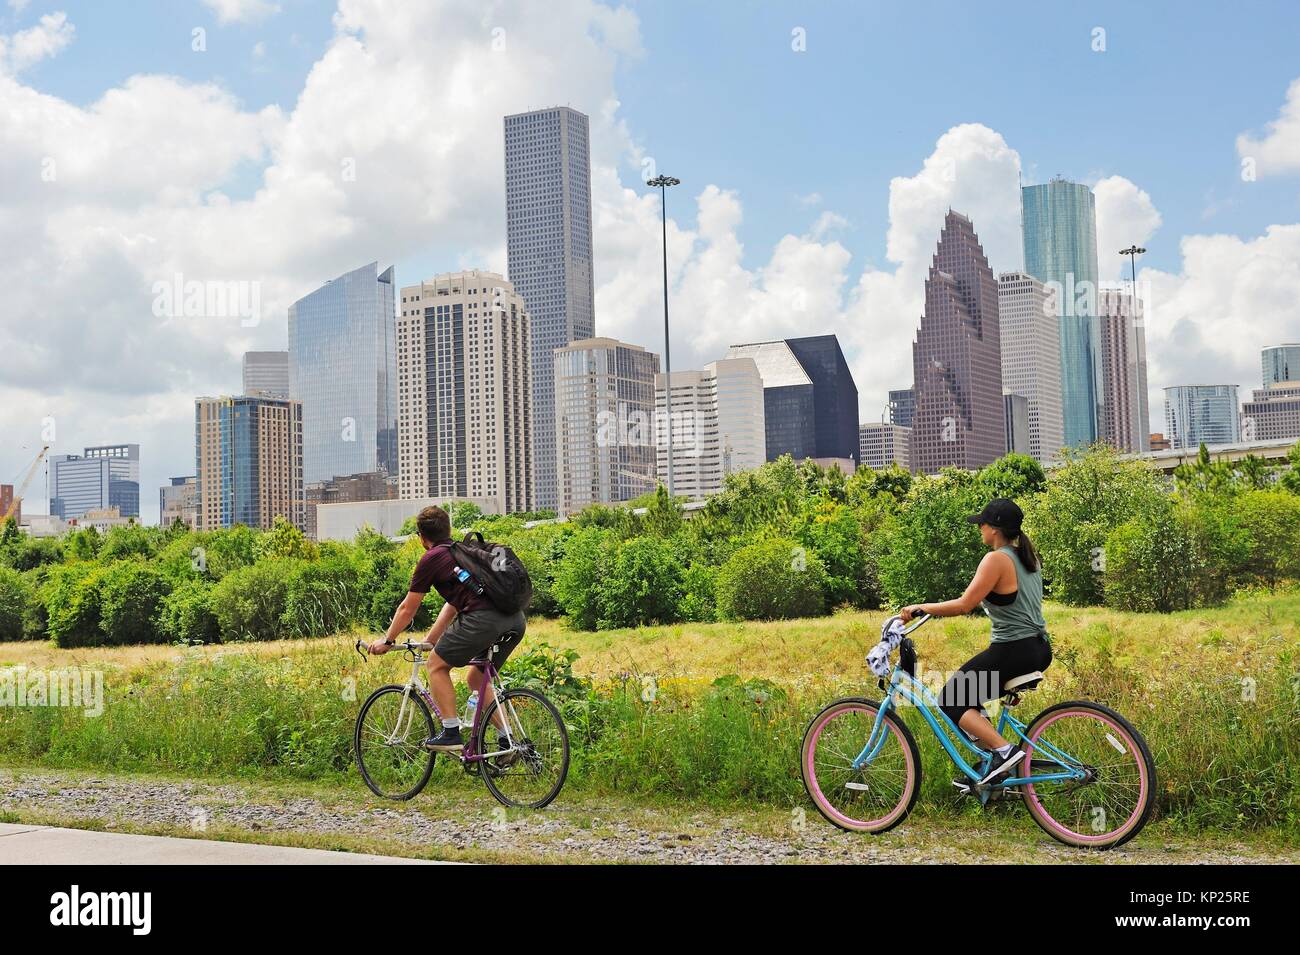 Voie cyclable le long de la rivière White Oak avec l'horizon à l'arrière-plan, Houston, Texas, États-Unis d'Amérique, Amérique du Nord. Banque D'Images